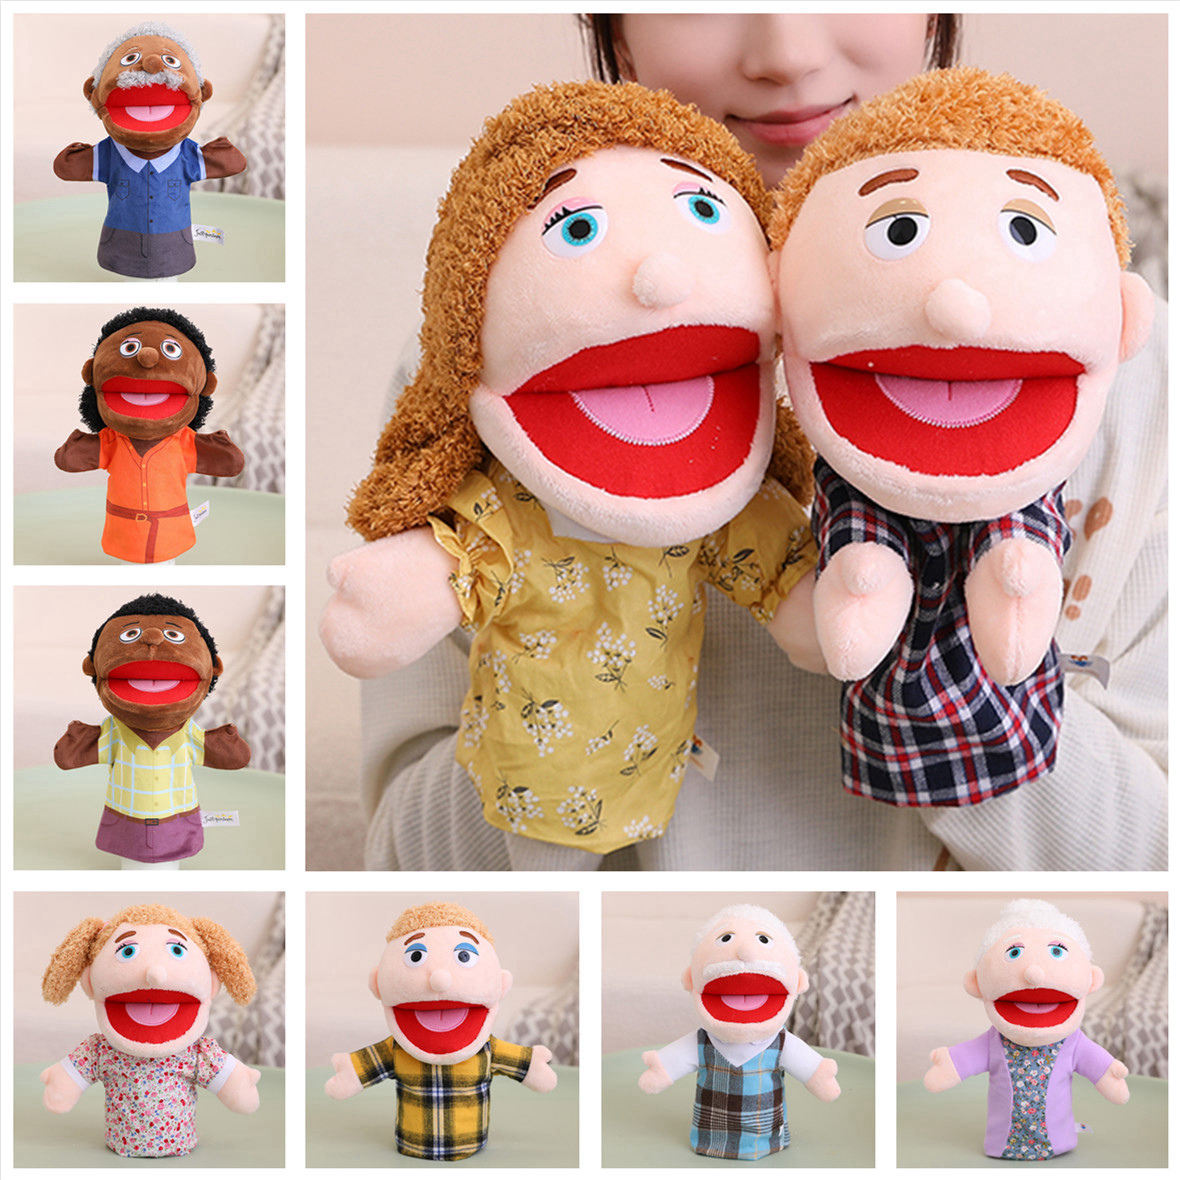 手偶玩具嘴巴能动幼儿园教具一家人物家庭成员手套张嘴讲故事玩偶